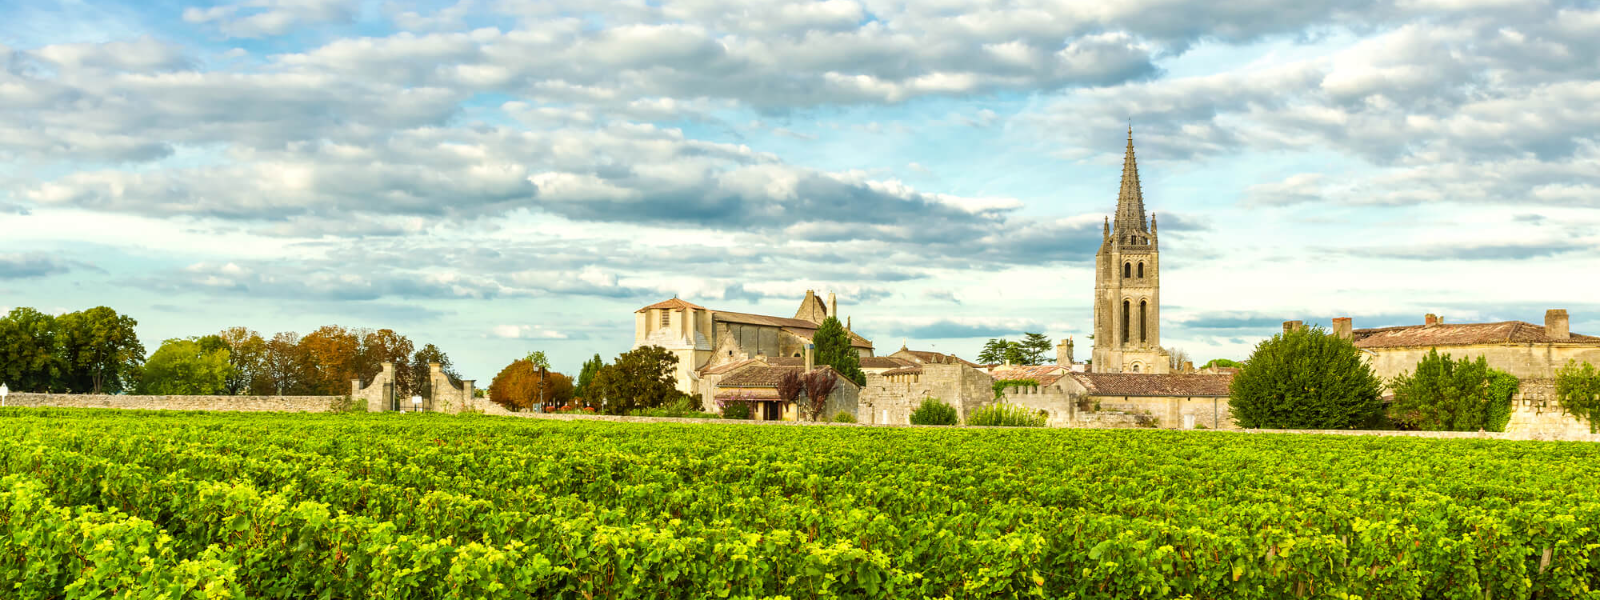 WINEINVEST OÜ - Oleme spetsialiseerunud eksklusiivsete Bordeaux veinide müügile ja investeerimisnõustamisele, viies kl...